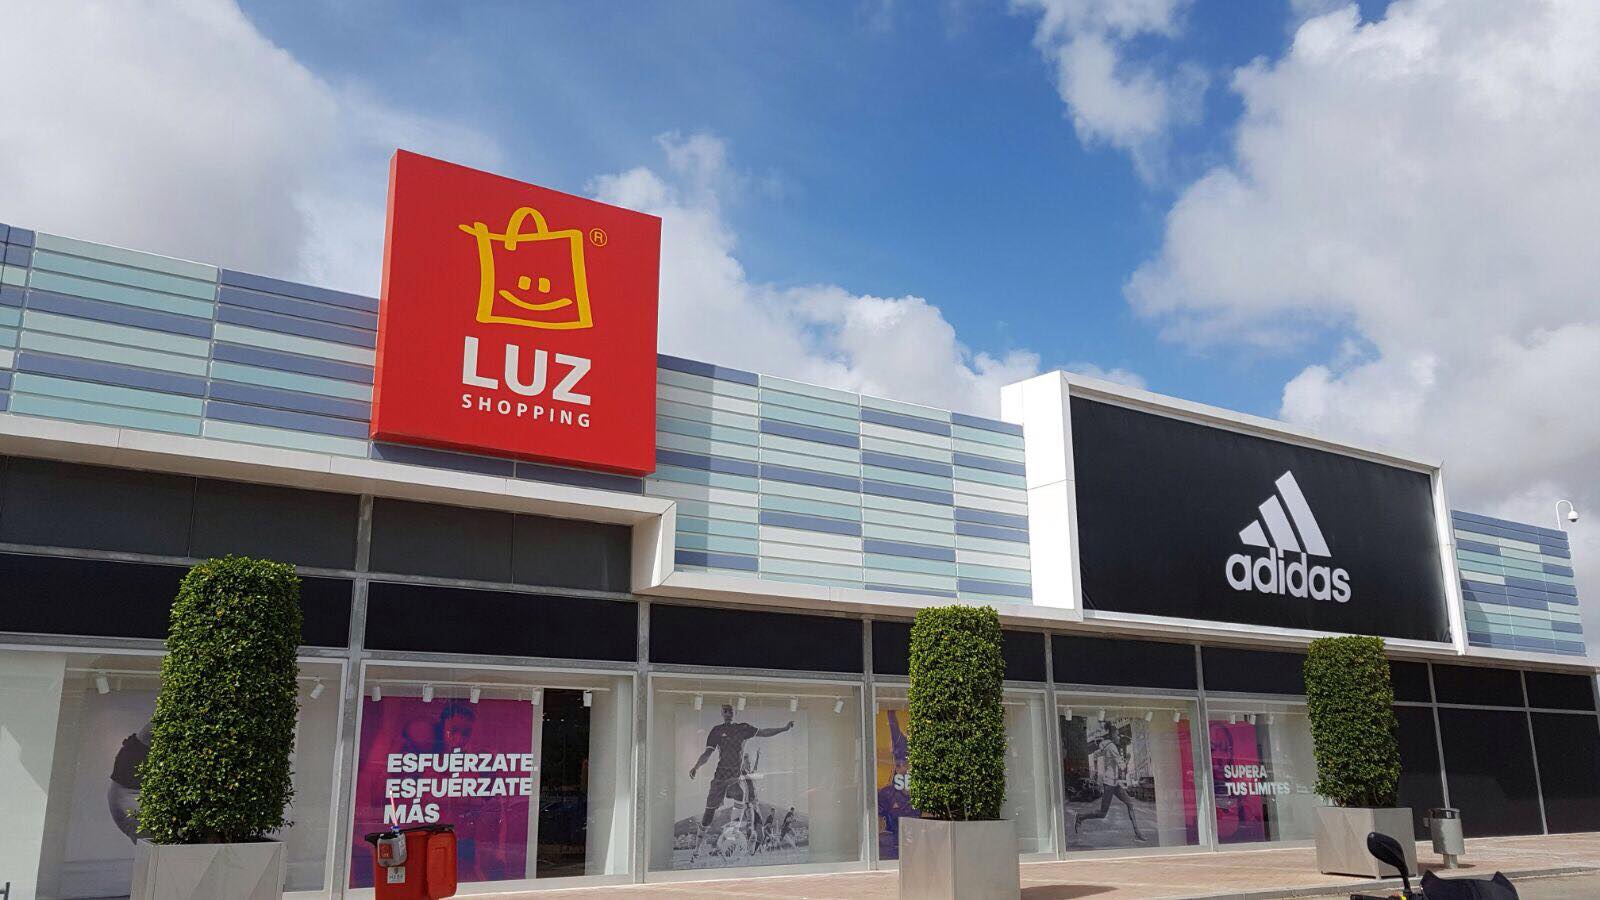 OFERTA DE EMPLEO EN JEREZ | busca vendedores para su tienda de LUZ Shopping en Jerez Televisión